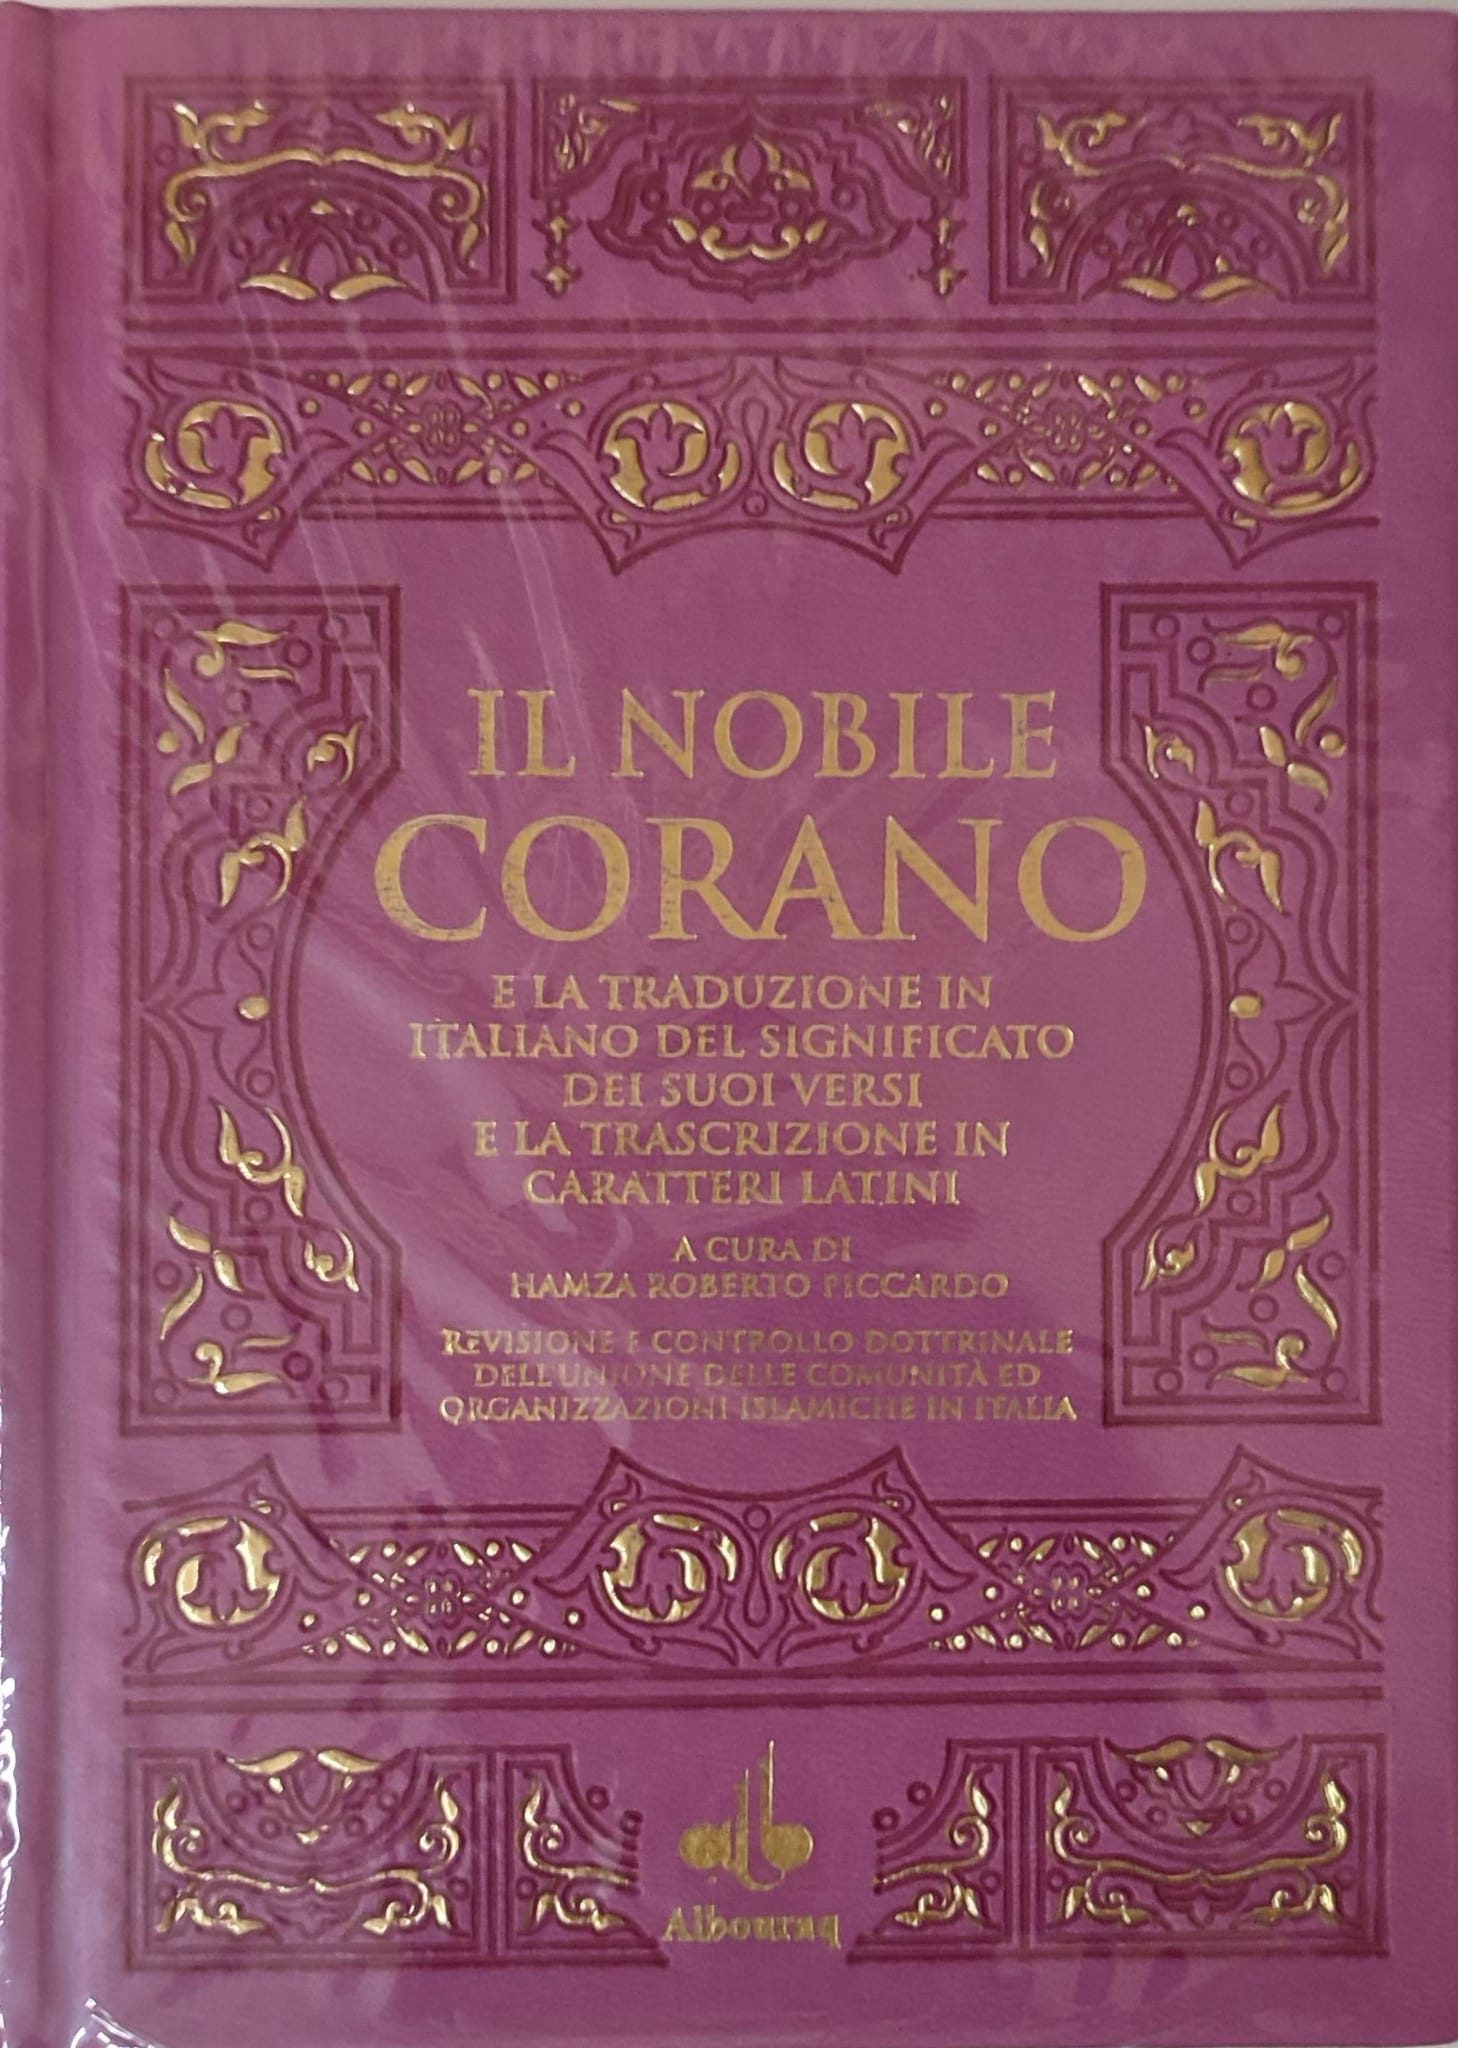 Il Nobile Corano in italiano testo arabo, traduzione e traslitterazione